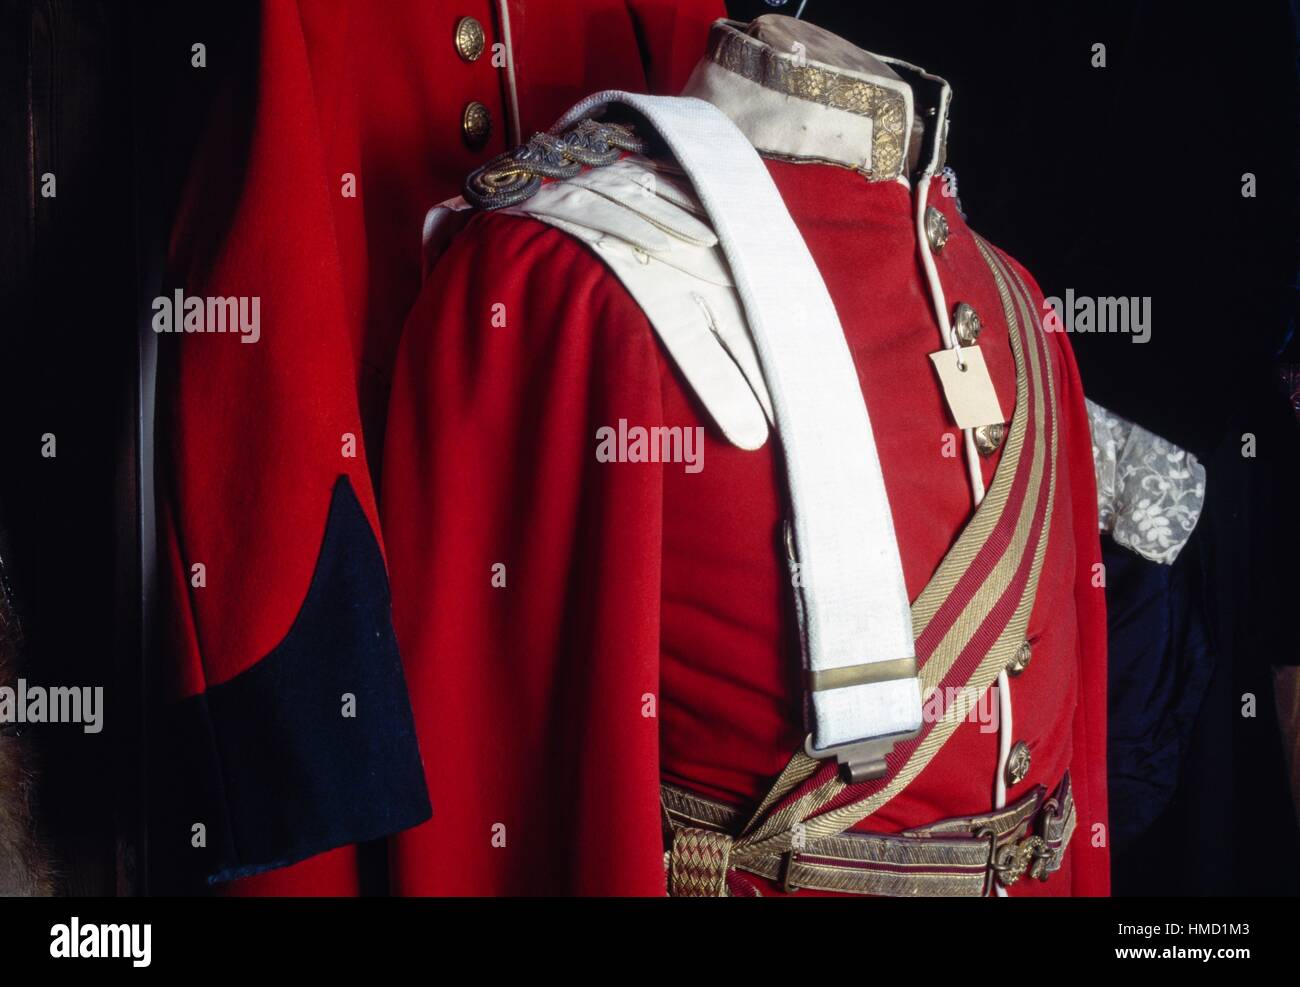 L'uniforme militaire dans un magasin de jouet, Musée Bygones, Torbay, Angleterre, Royaume-Uni. Banque D'Images